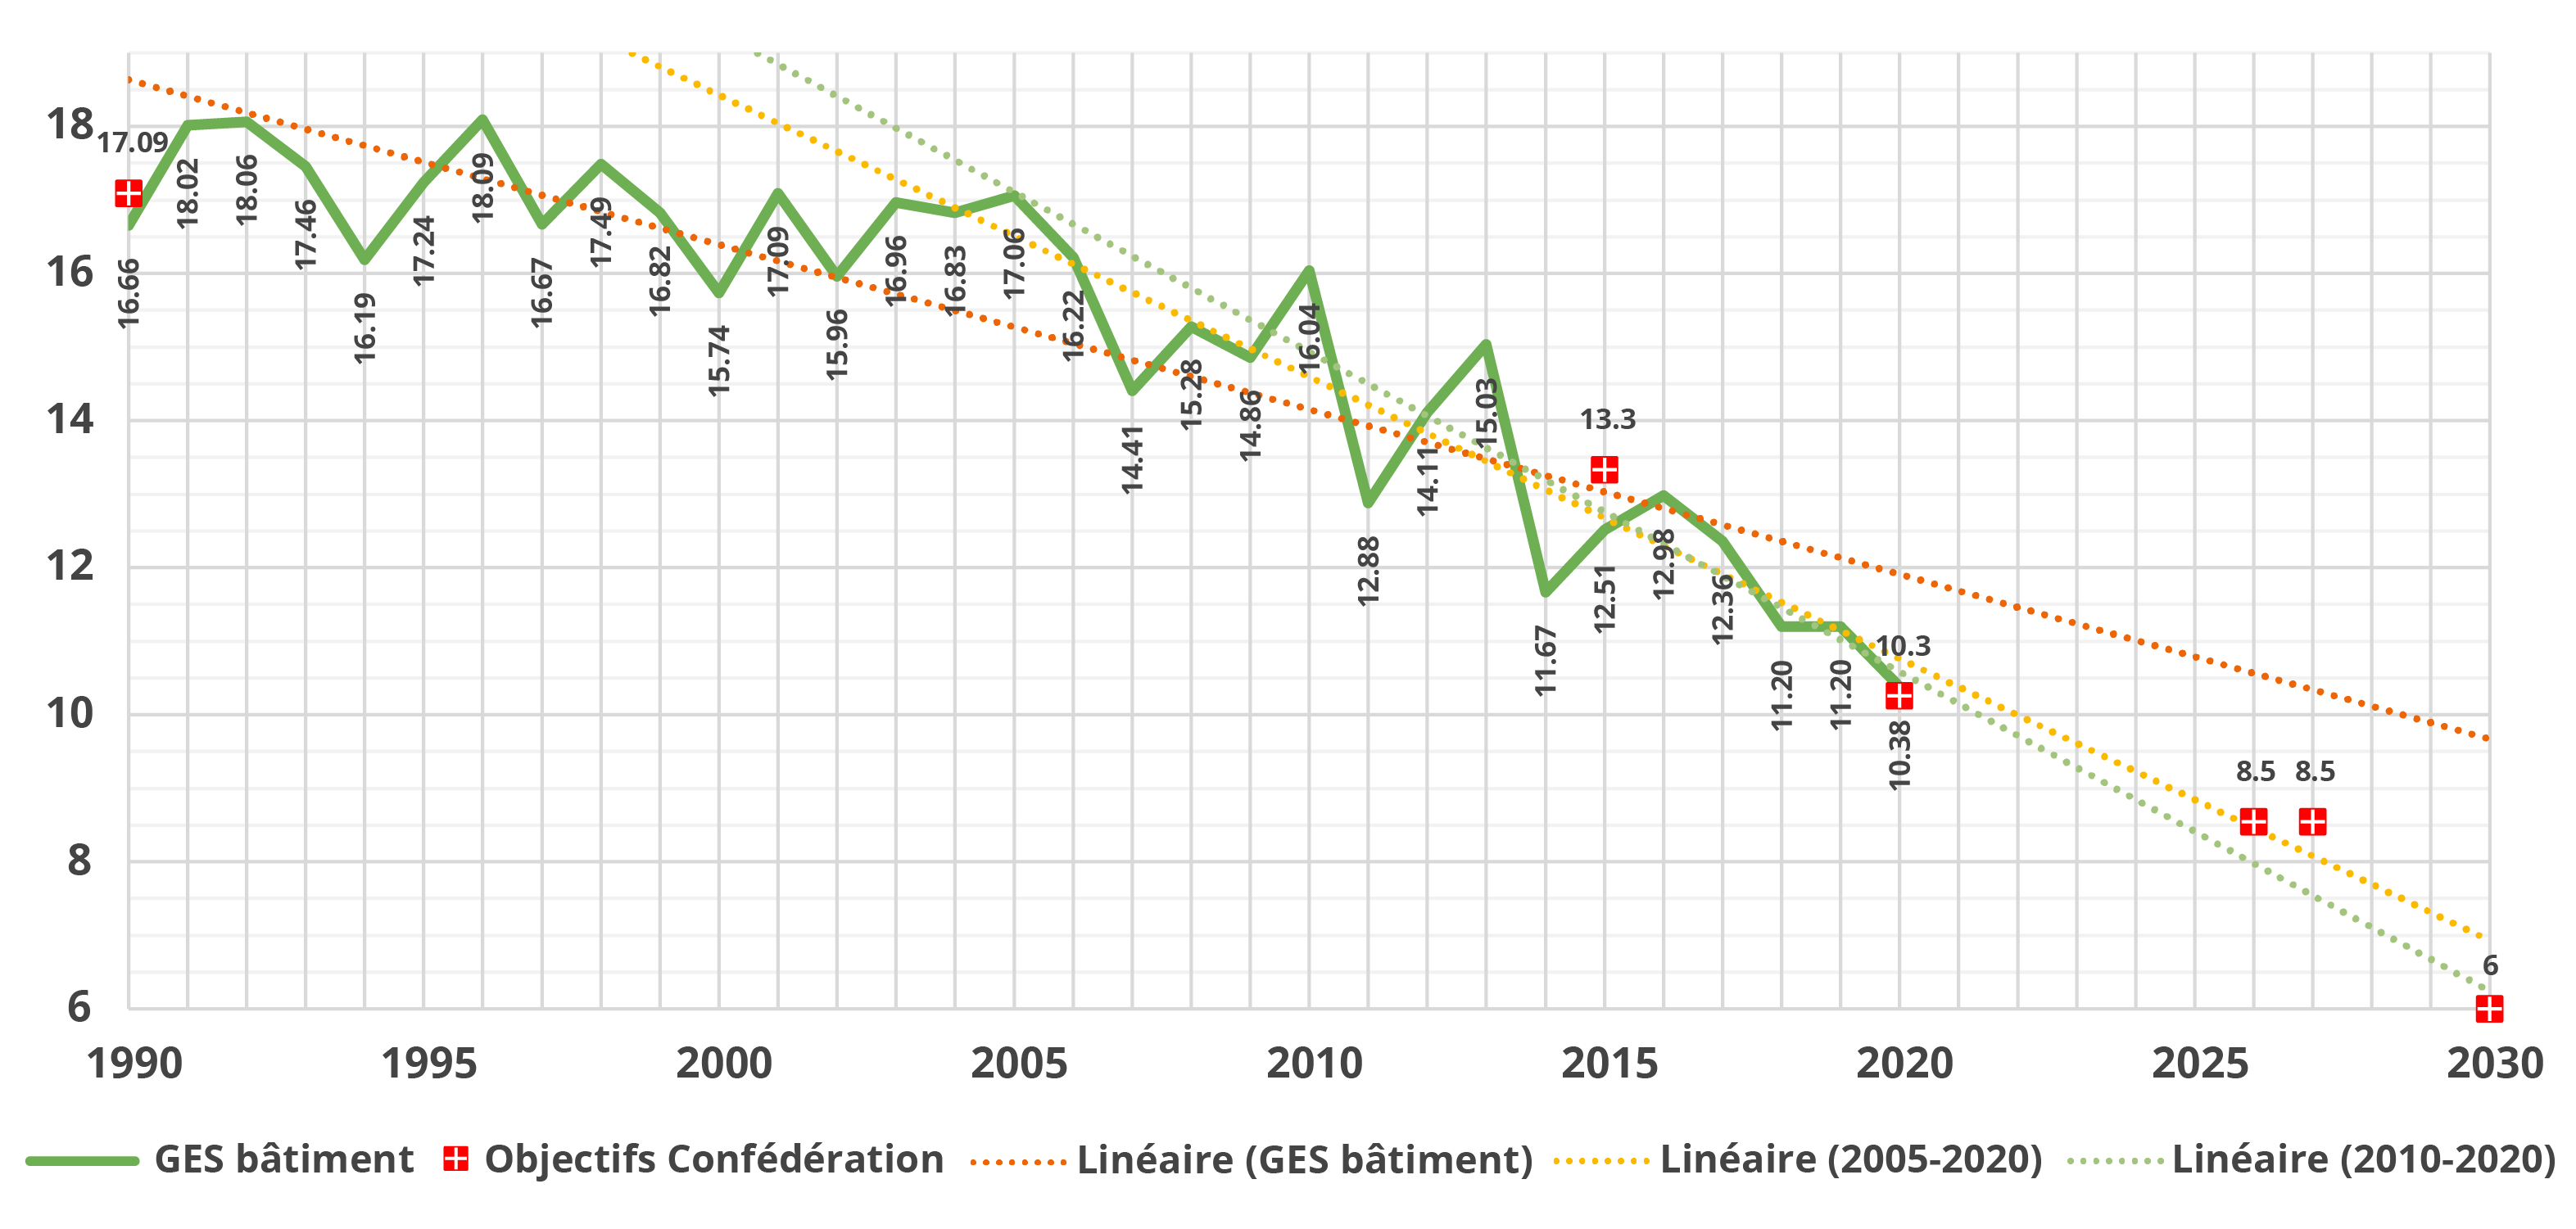 Émissions de CO2 des bâtiments selon l’inventaire suisse des gaz à effet de serre [mio. t de CO2]